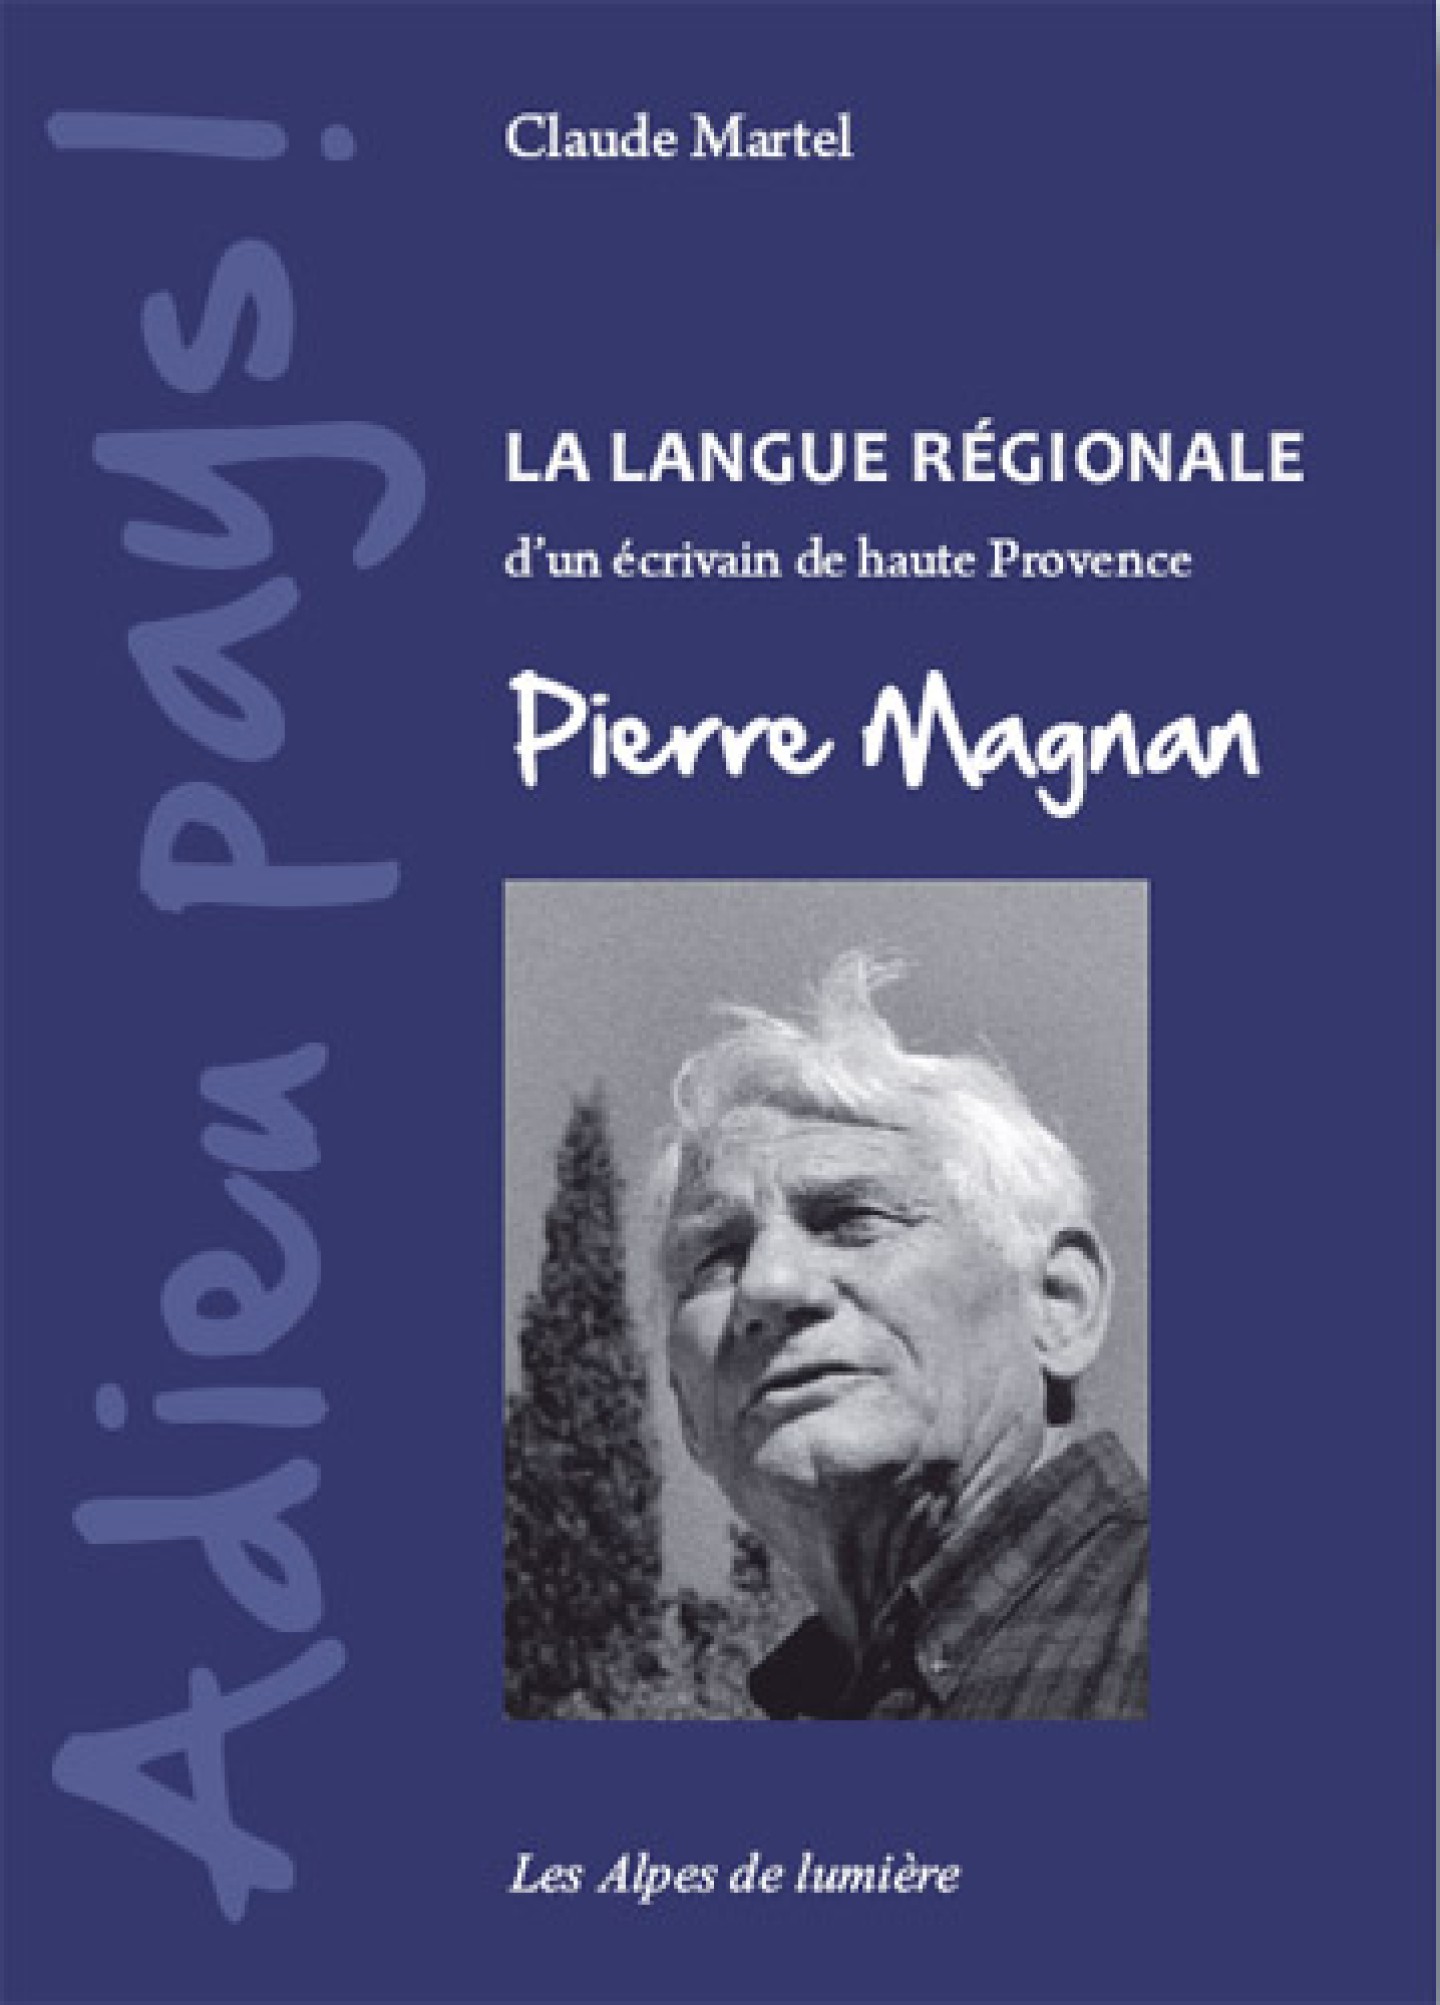 Adieu pays, La langue régionale d’un écrivain de Haute Provence Pierre Magnan de Claude Martel